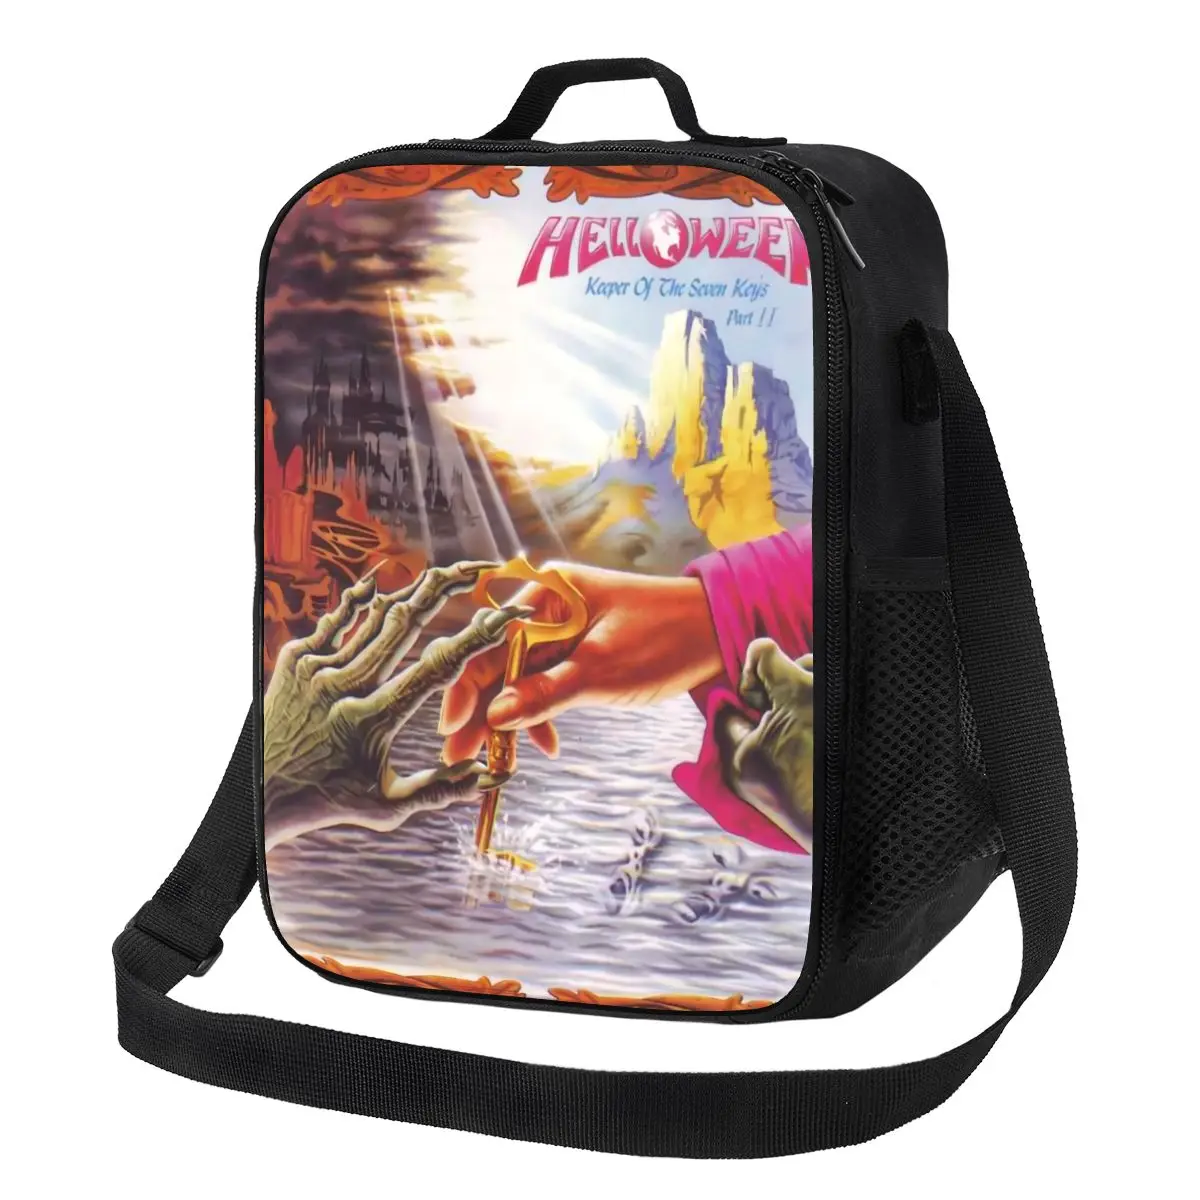 

Helloween Keeper Of The Seven Keys Изолированные сумки для обеда для работы, школа, тяжелый металл, рок, многоразовый охладитель, термальный Ланч-бокс